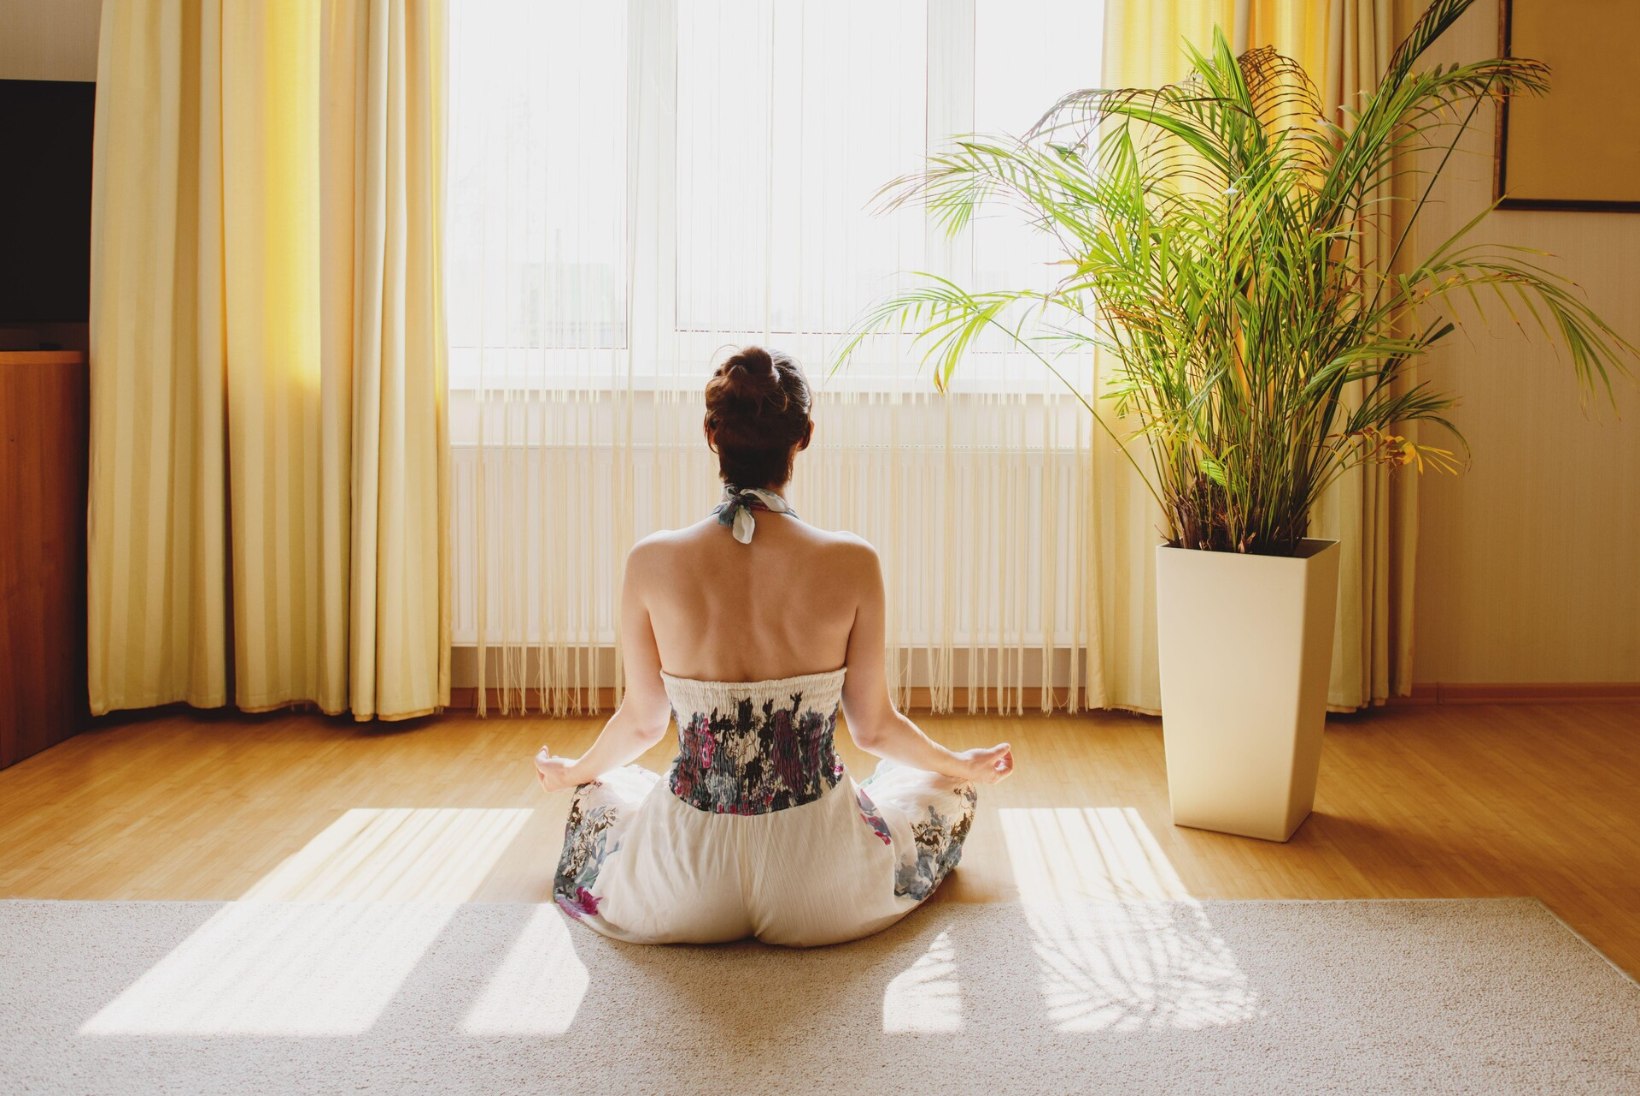 NAISED JAGAVAD KOGEMUSI: kas trendikad mindfulness-äpid muudavad tõesti elu paremaks?